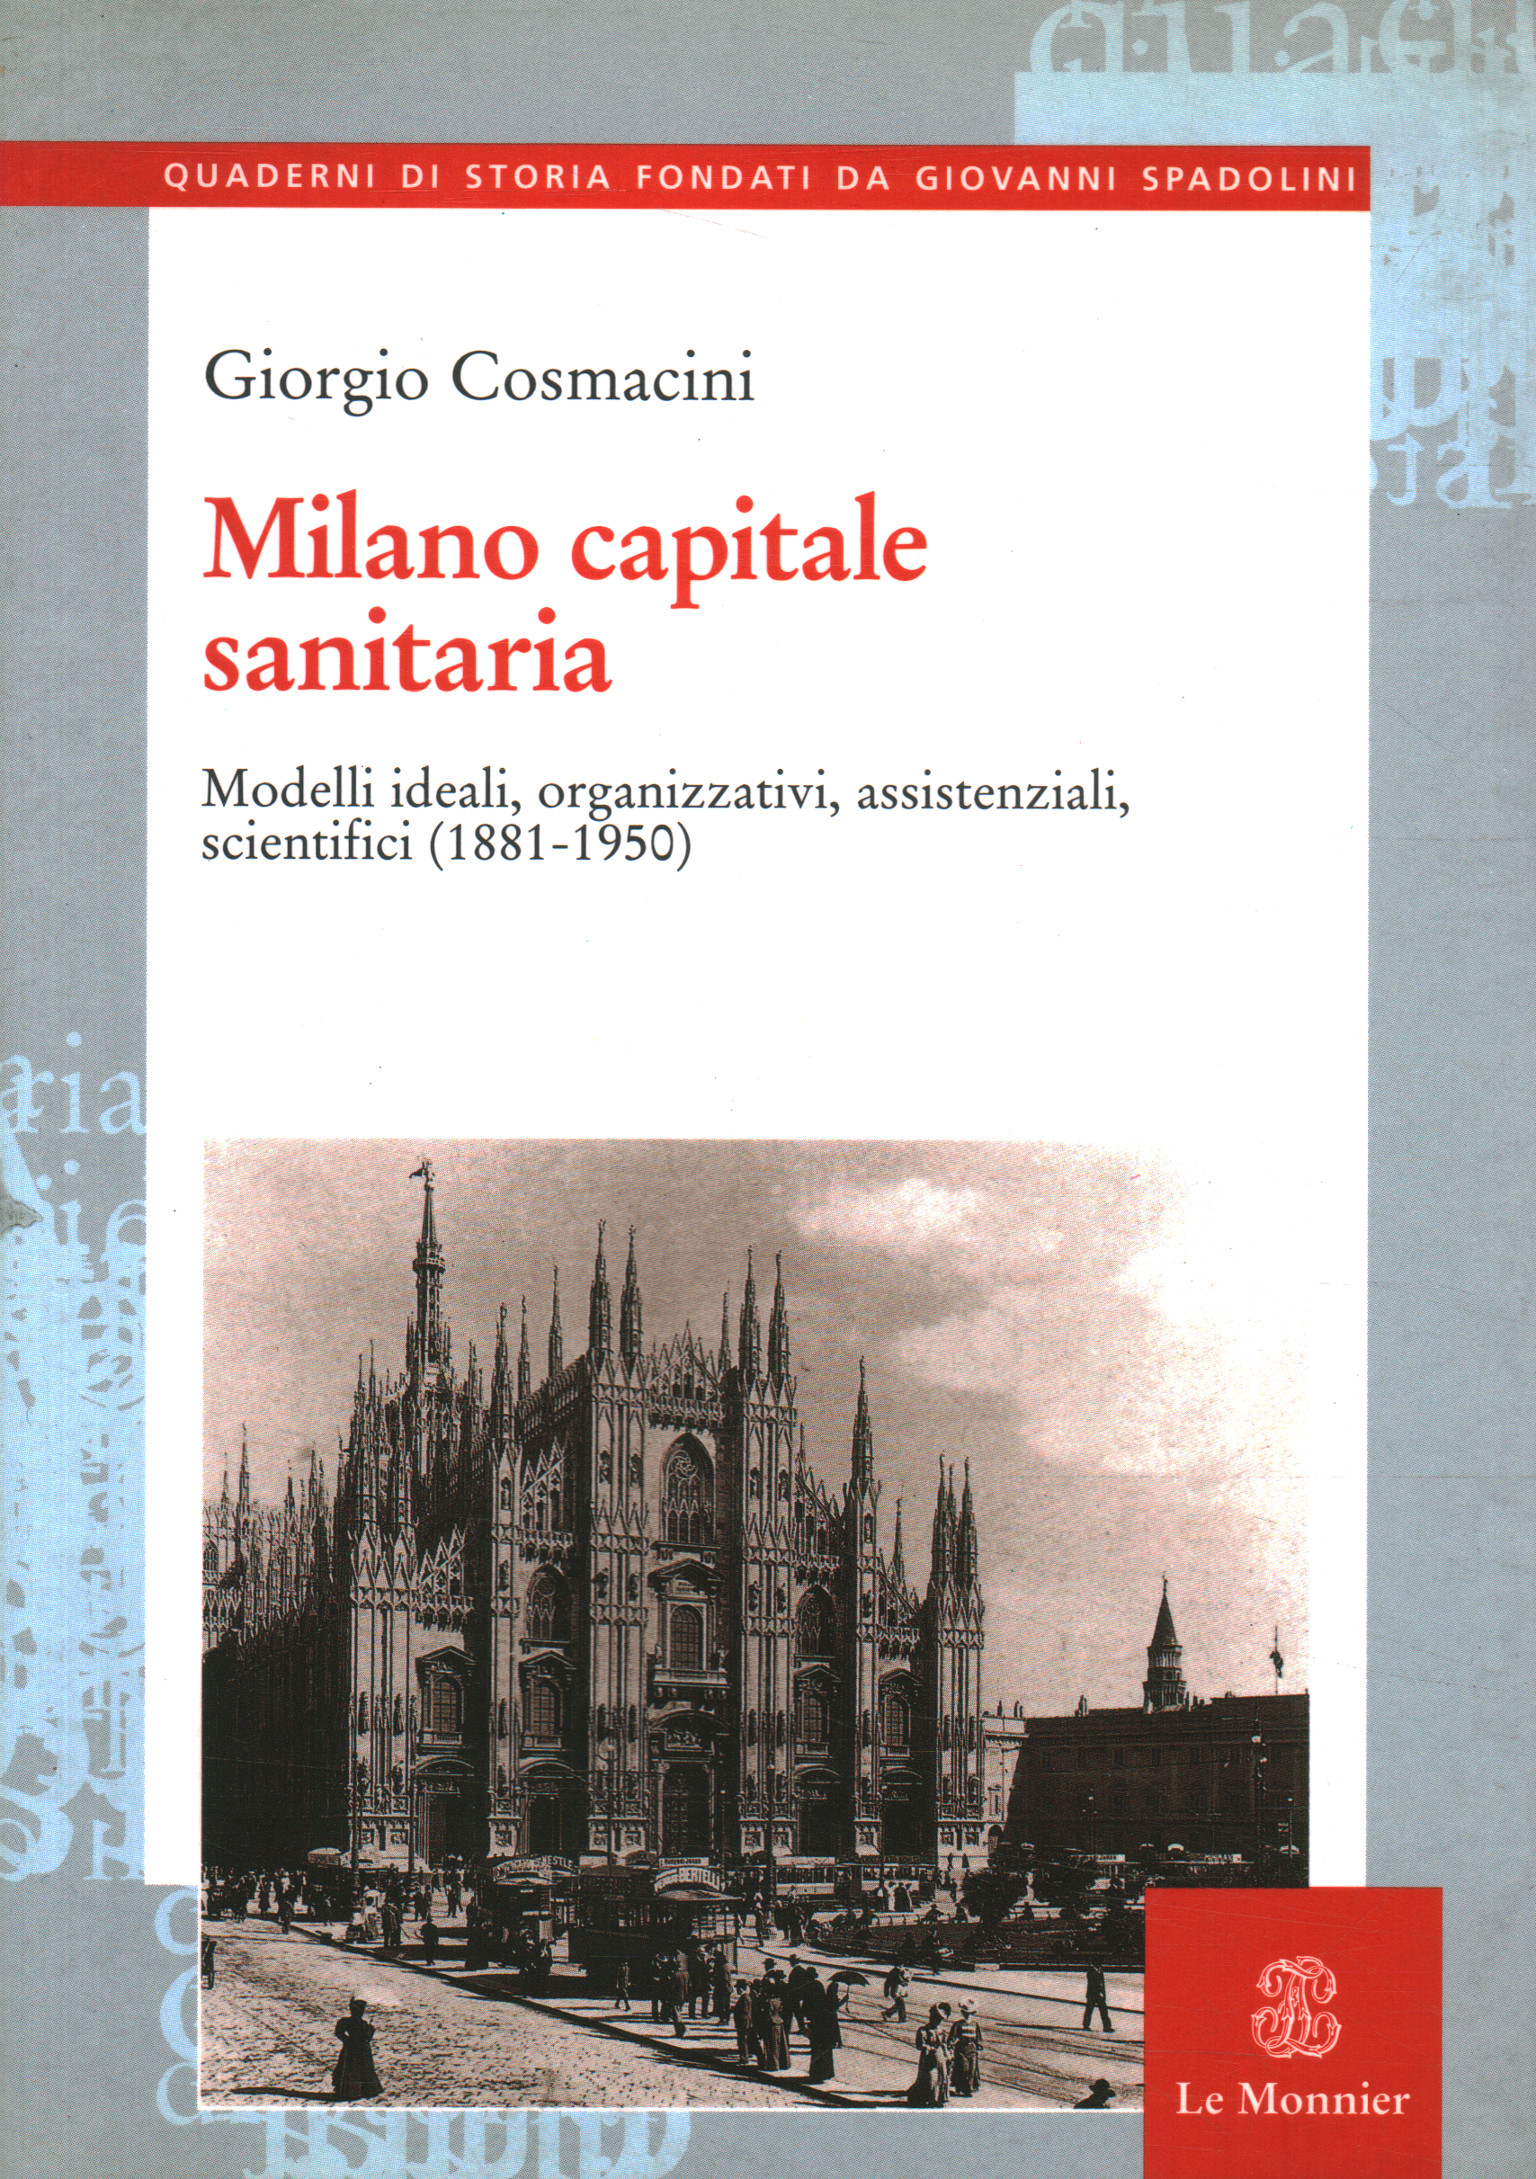 Milan capitale de la santé